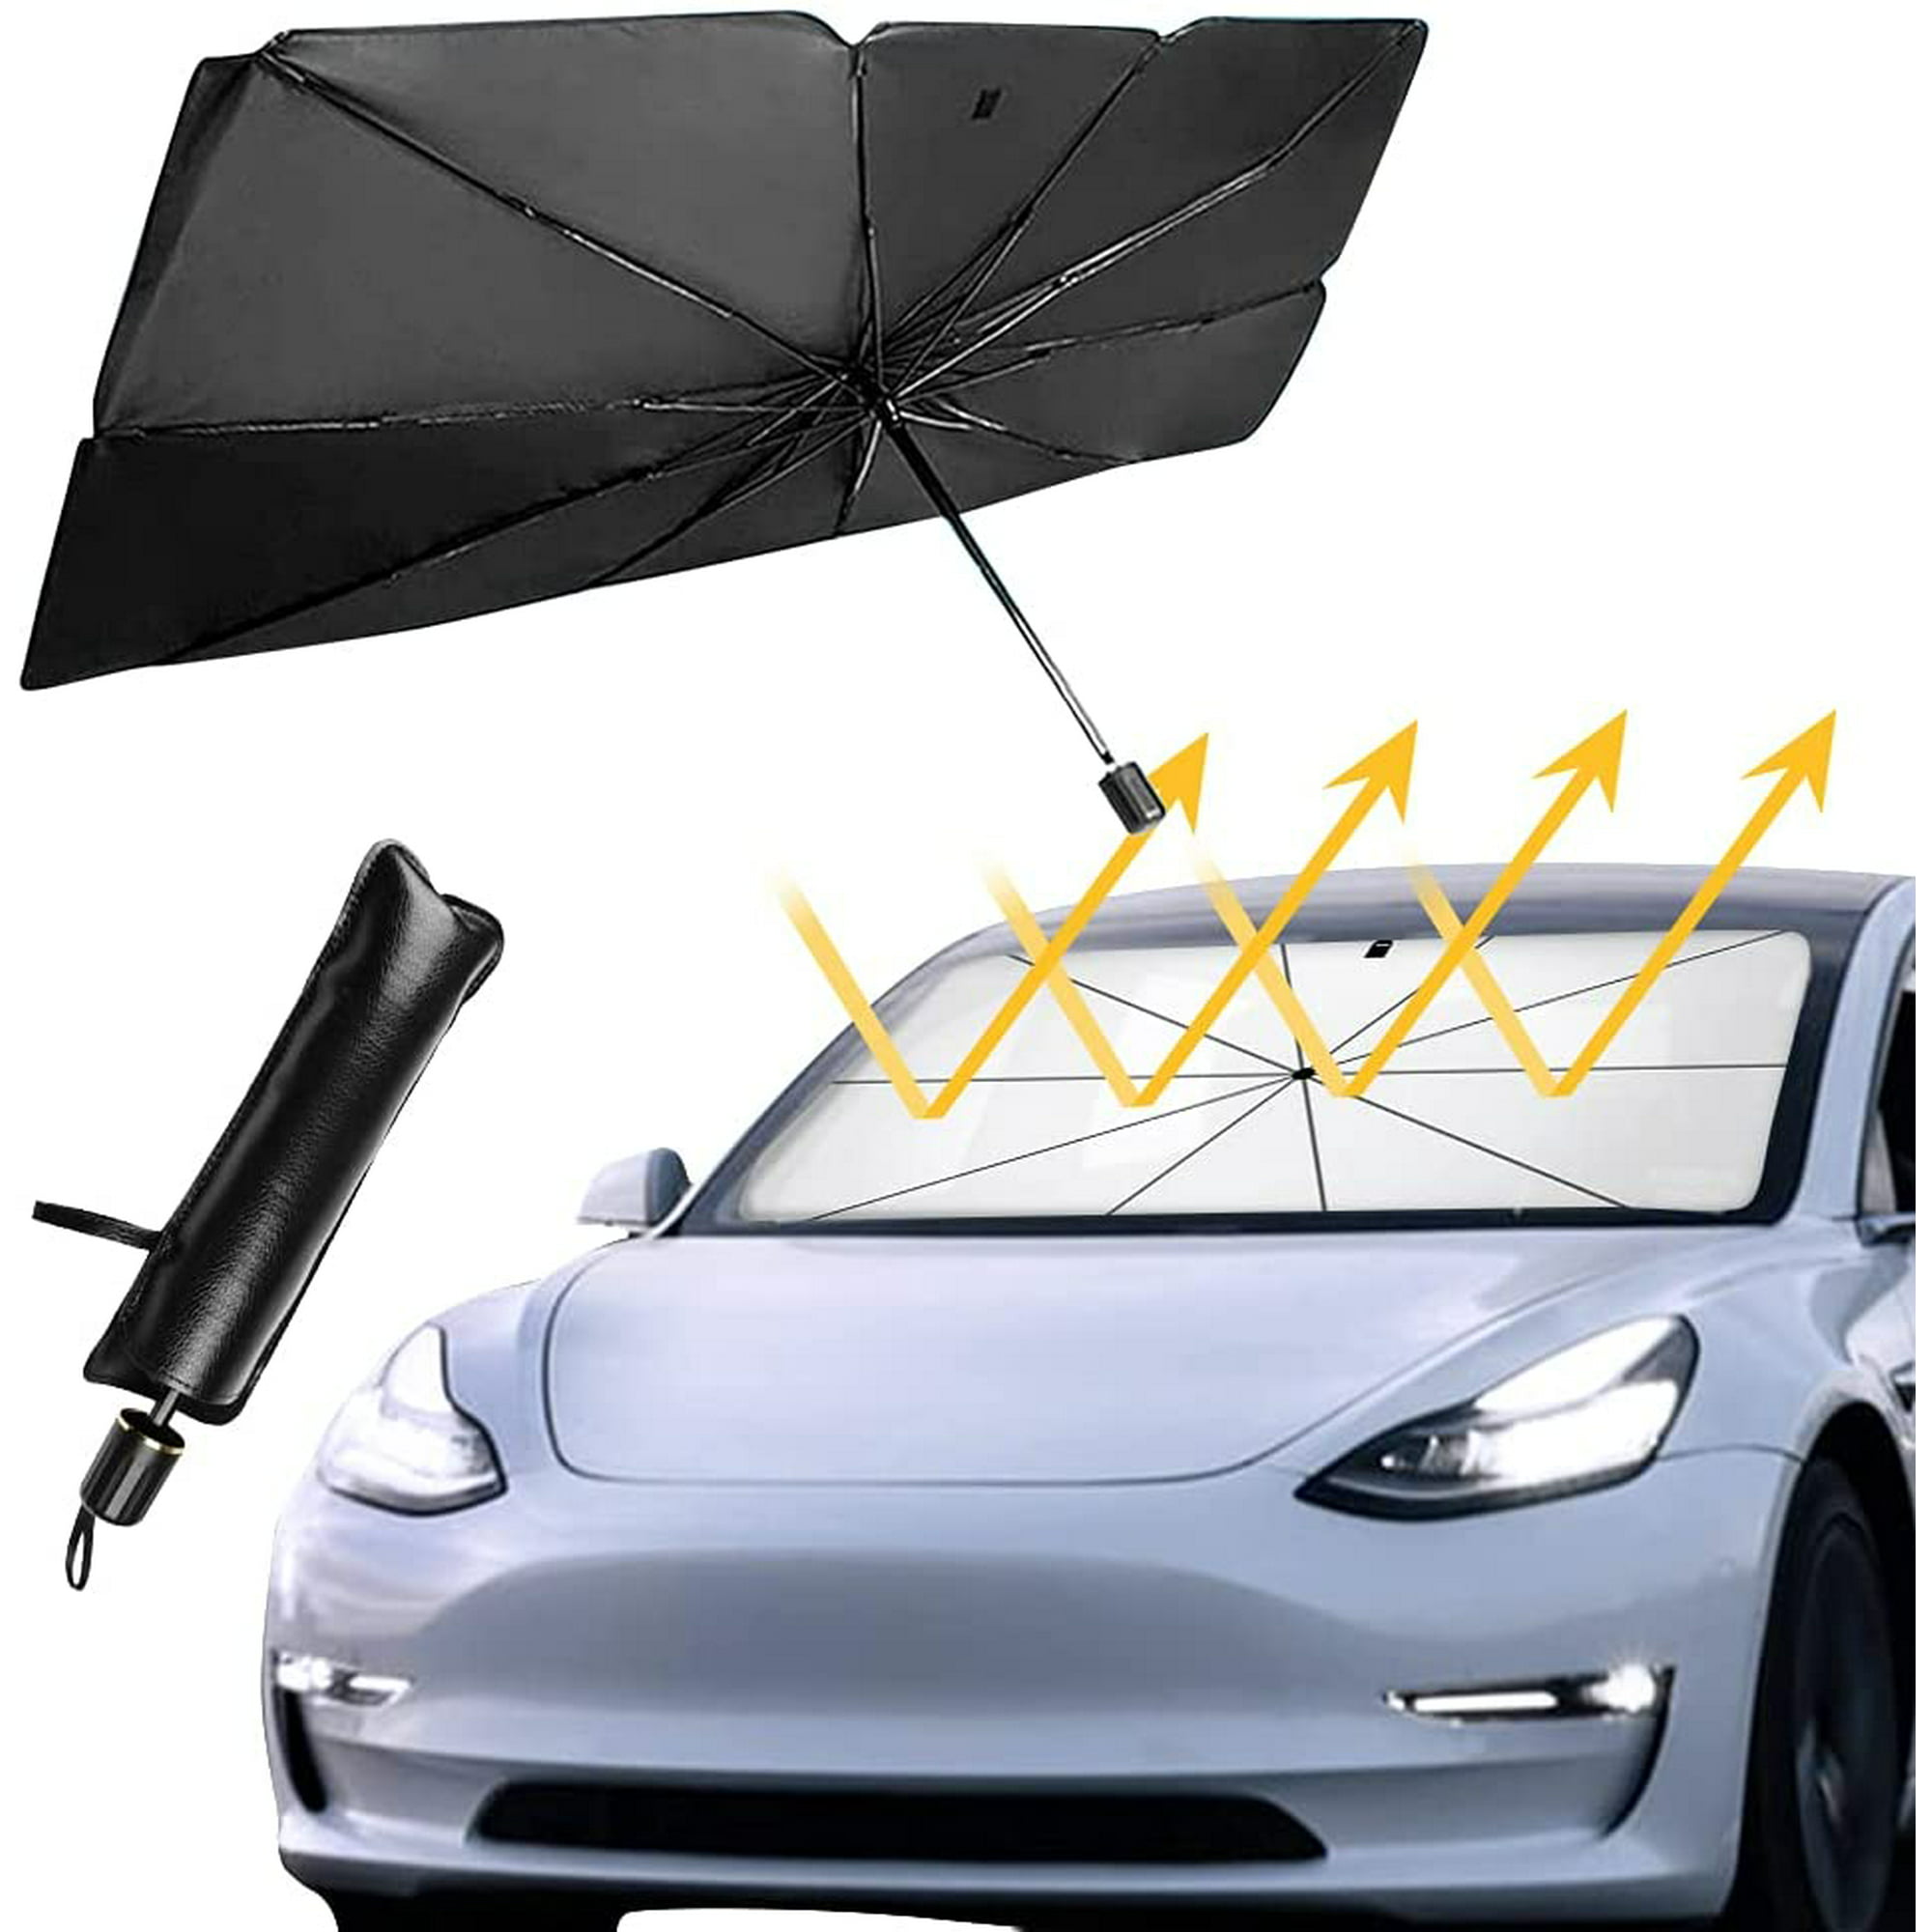  Parasoles de coche para parabrisas delantero, parasol plegable,  flotante, protección contra el calor, SUV, camión : Automotriz